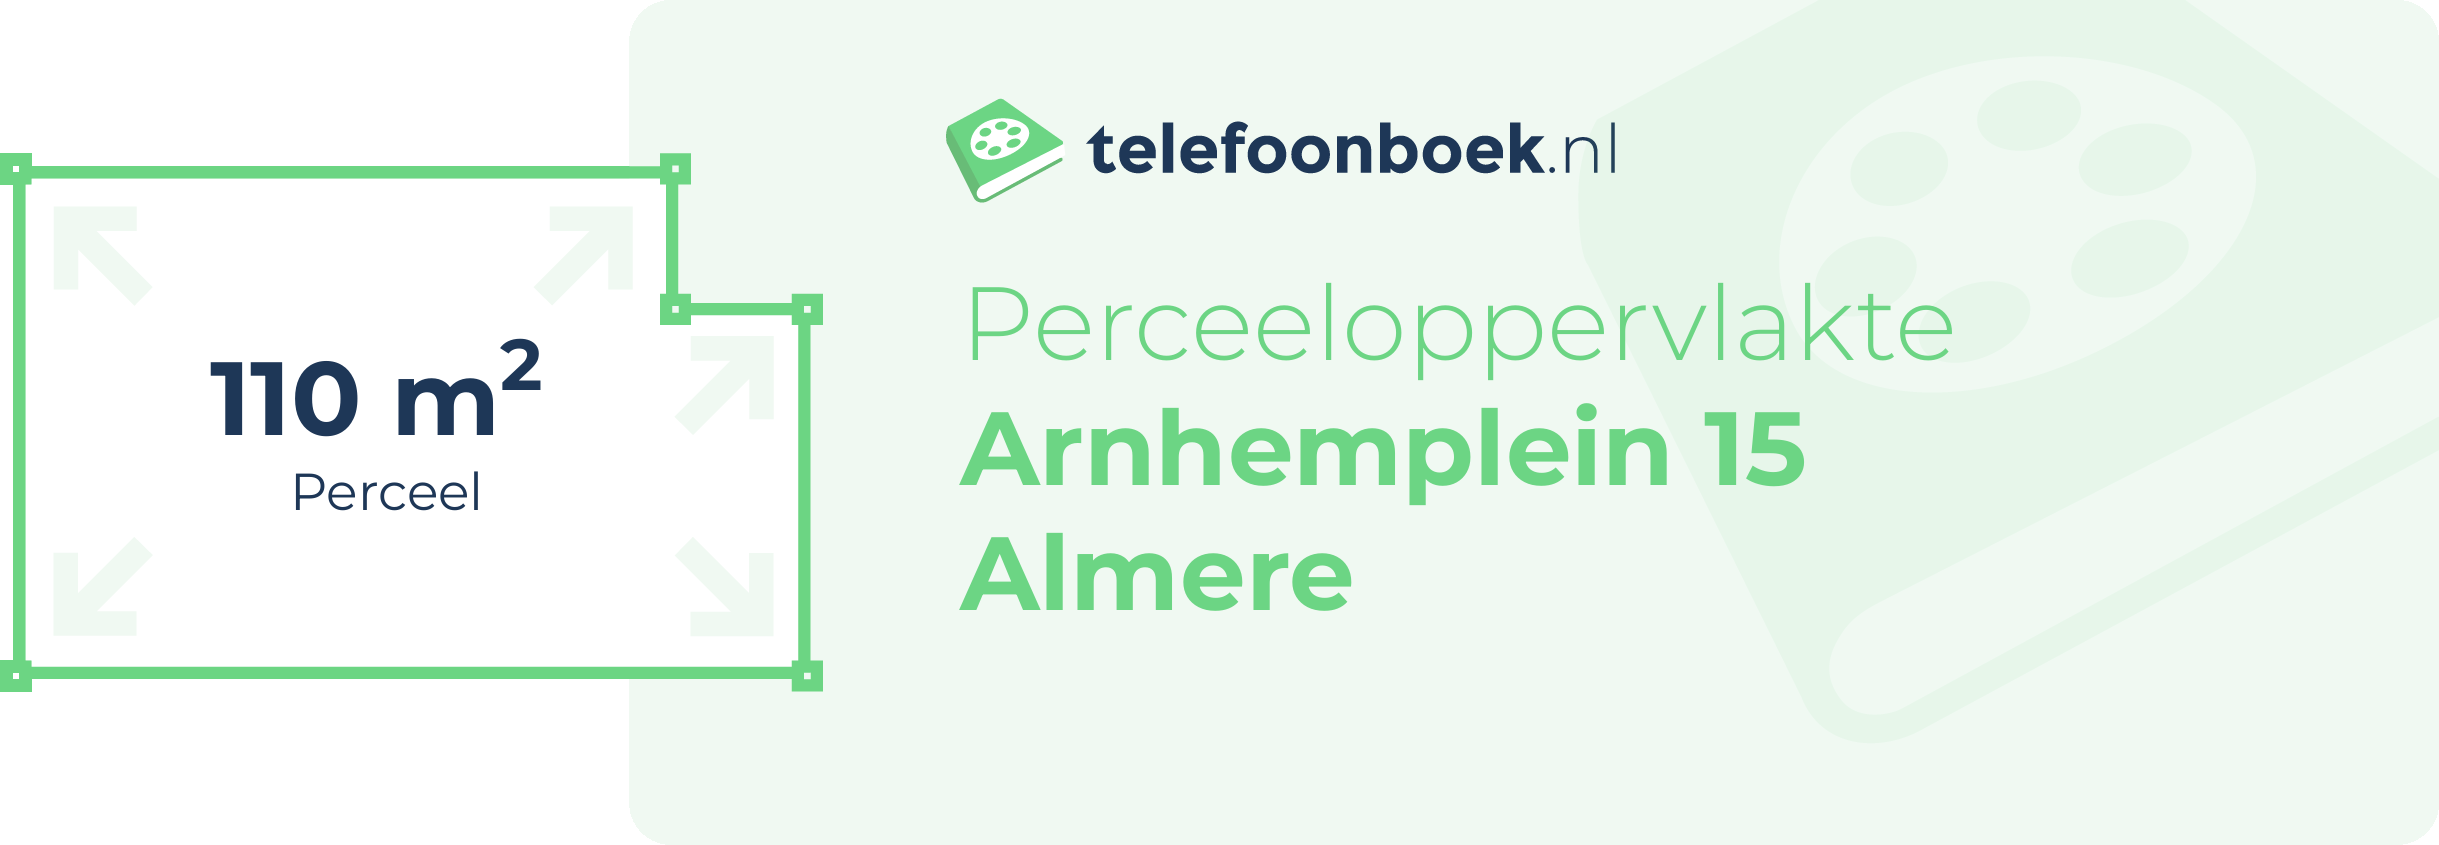 Perceeloppervlakte Arnhemplein 15 Almere